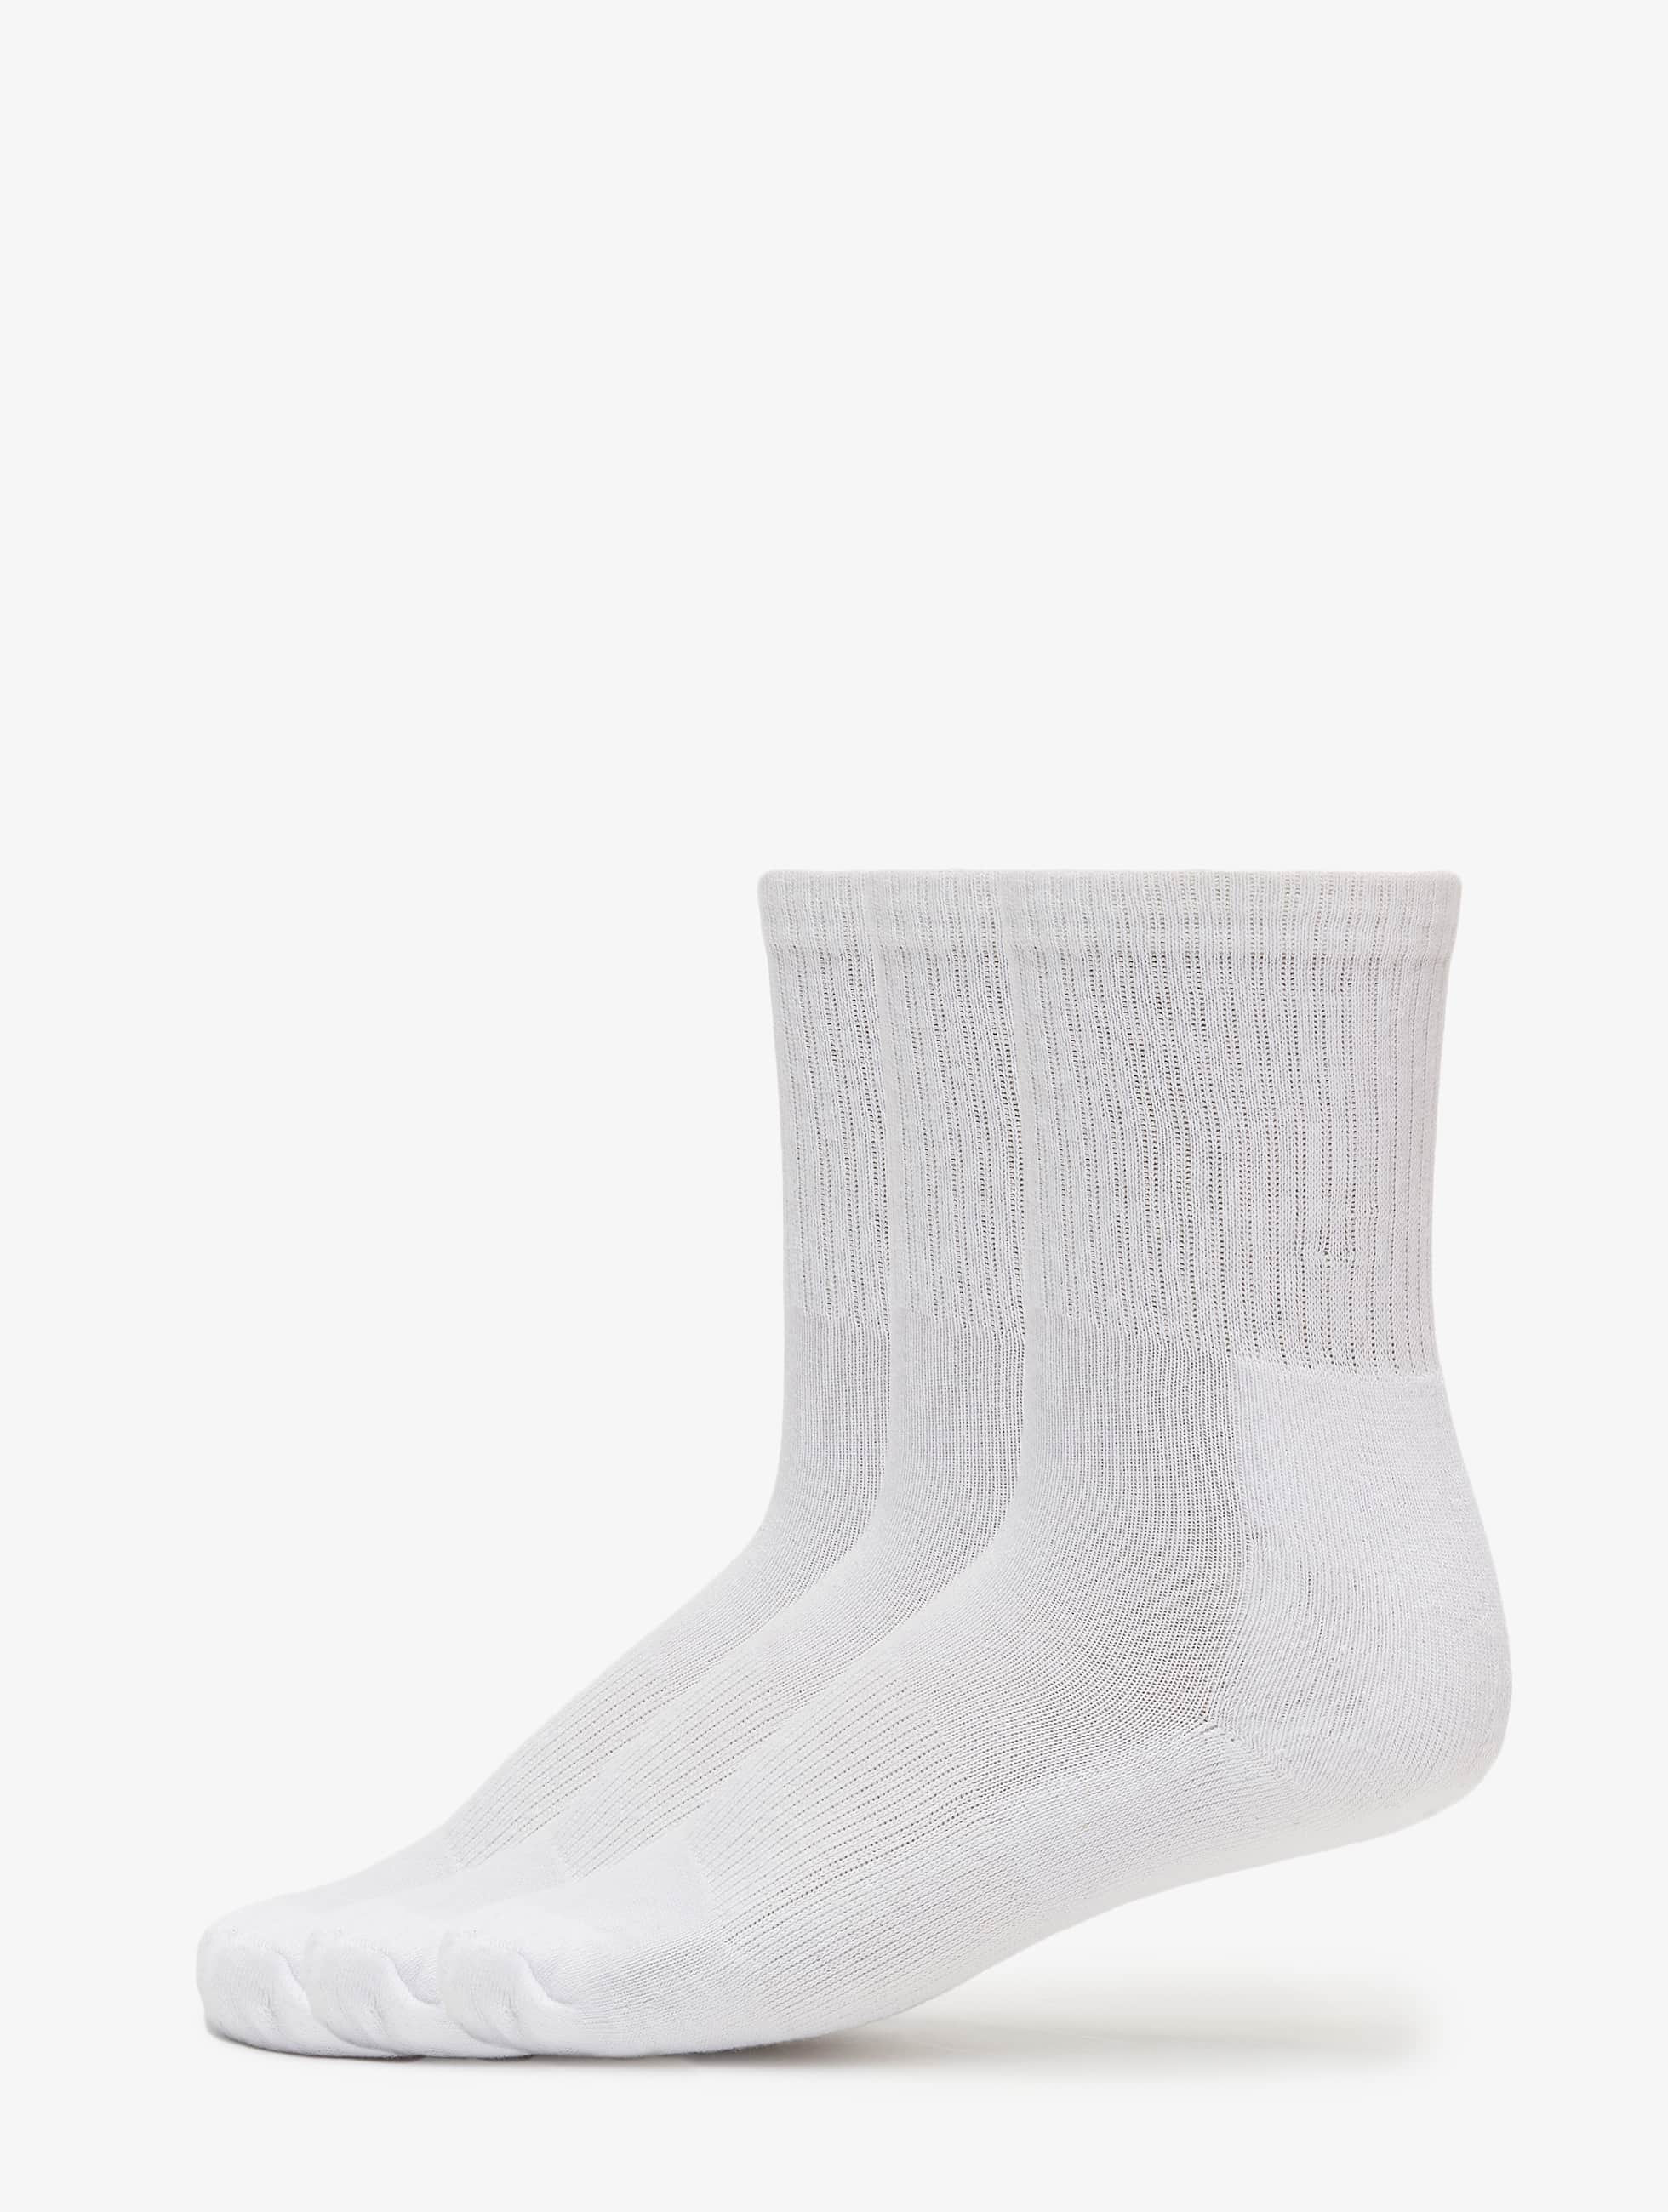 Bild von Urban Classics Männer,Frauen Socken 3-Pack Sport in weiß